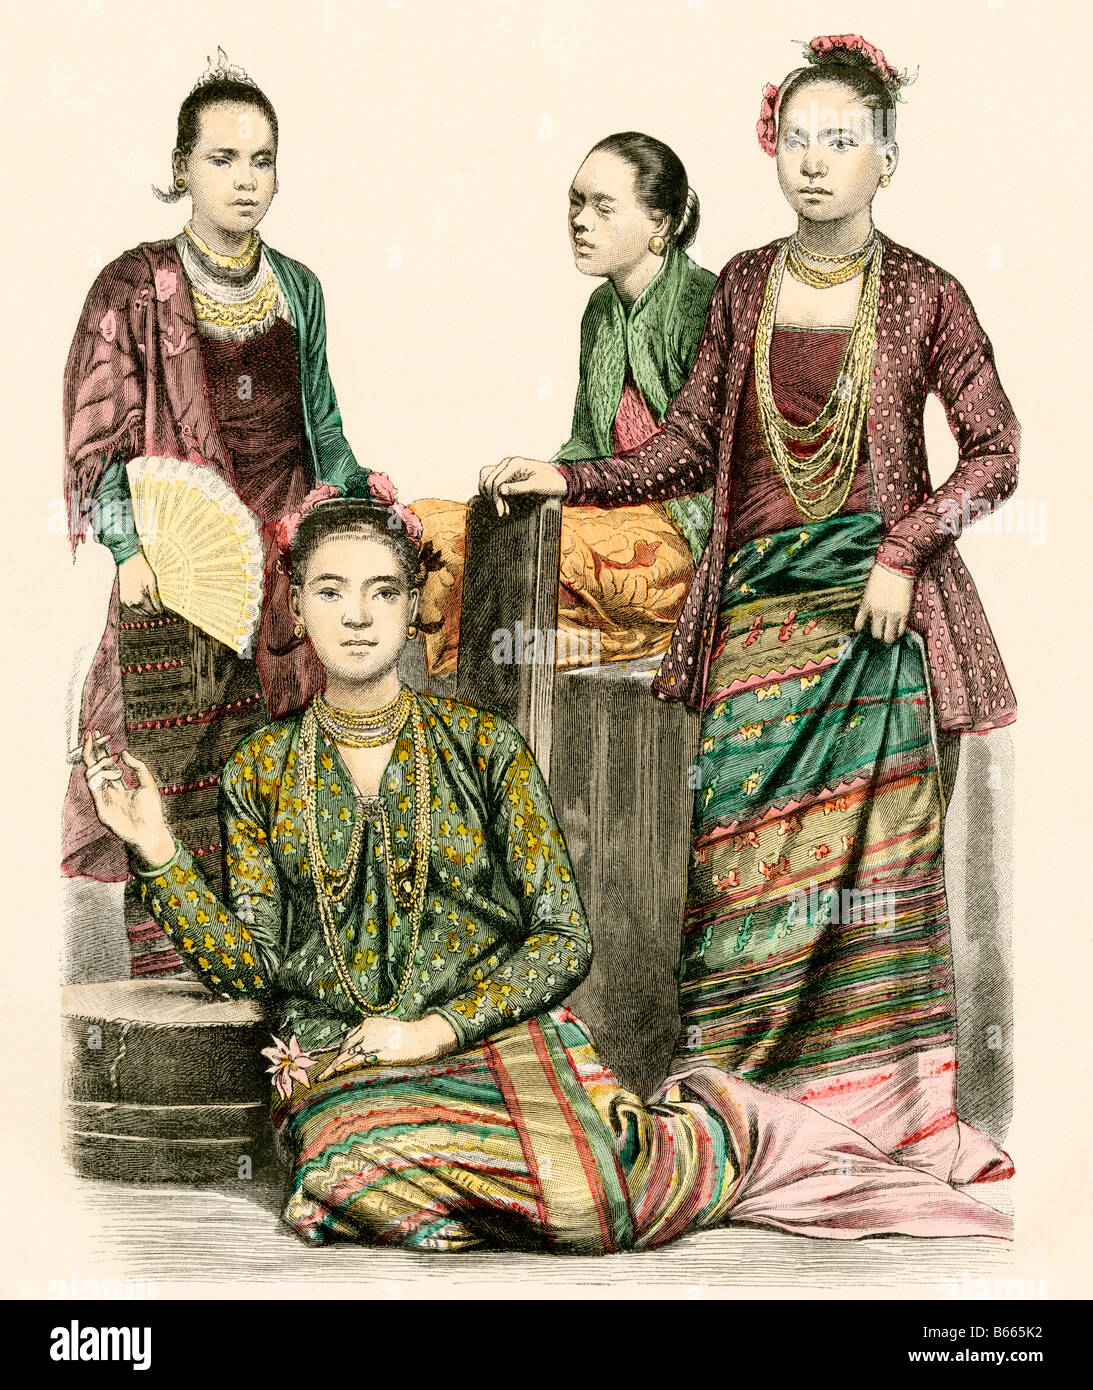 Frauen aus Burma, heute Myanmar, in traditioneller Kleidung 1800. Hand-farbig drucken Stockfoto